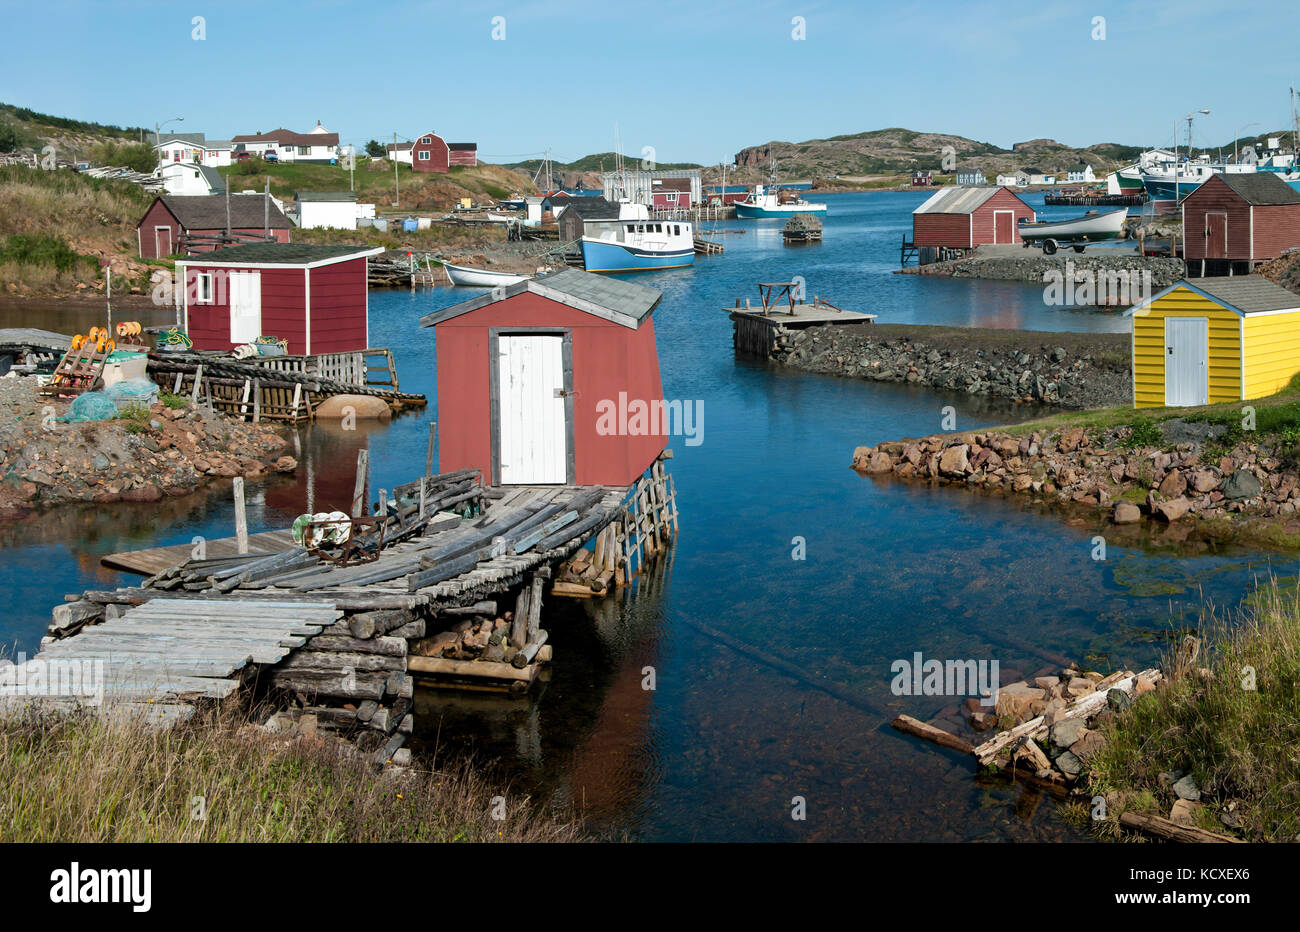 Neufundland Fischerdorf: Angeln shanties sitzen auf rustikalen Holzmöbeln Piers und Kaianlagen, die in einem kleinen North Coast Harbor erweitern. Stockfoto